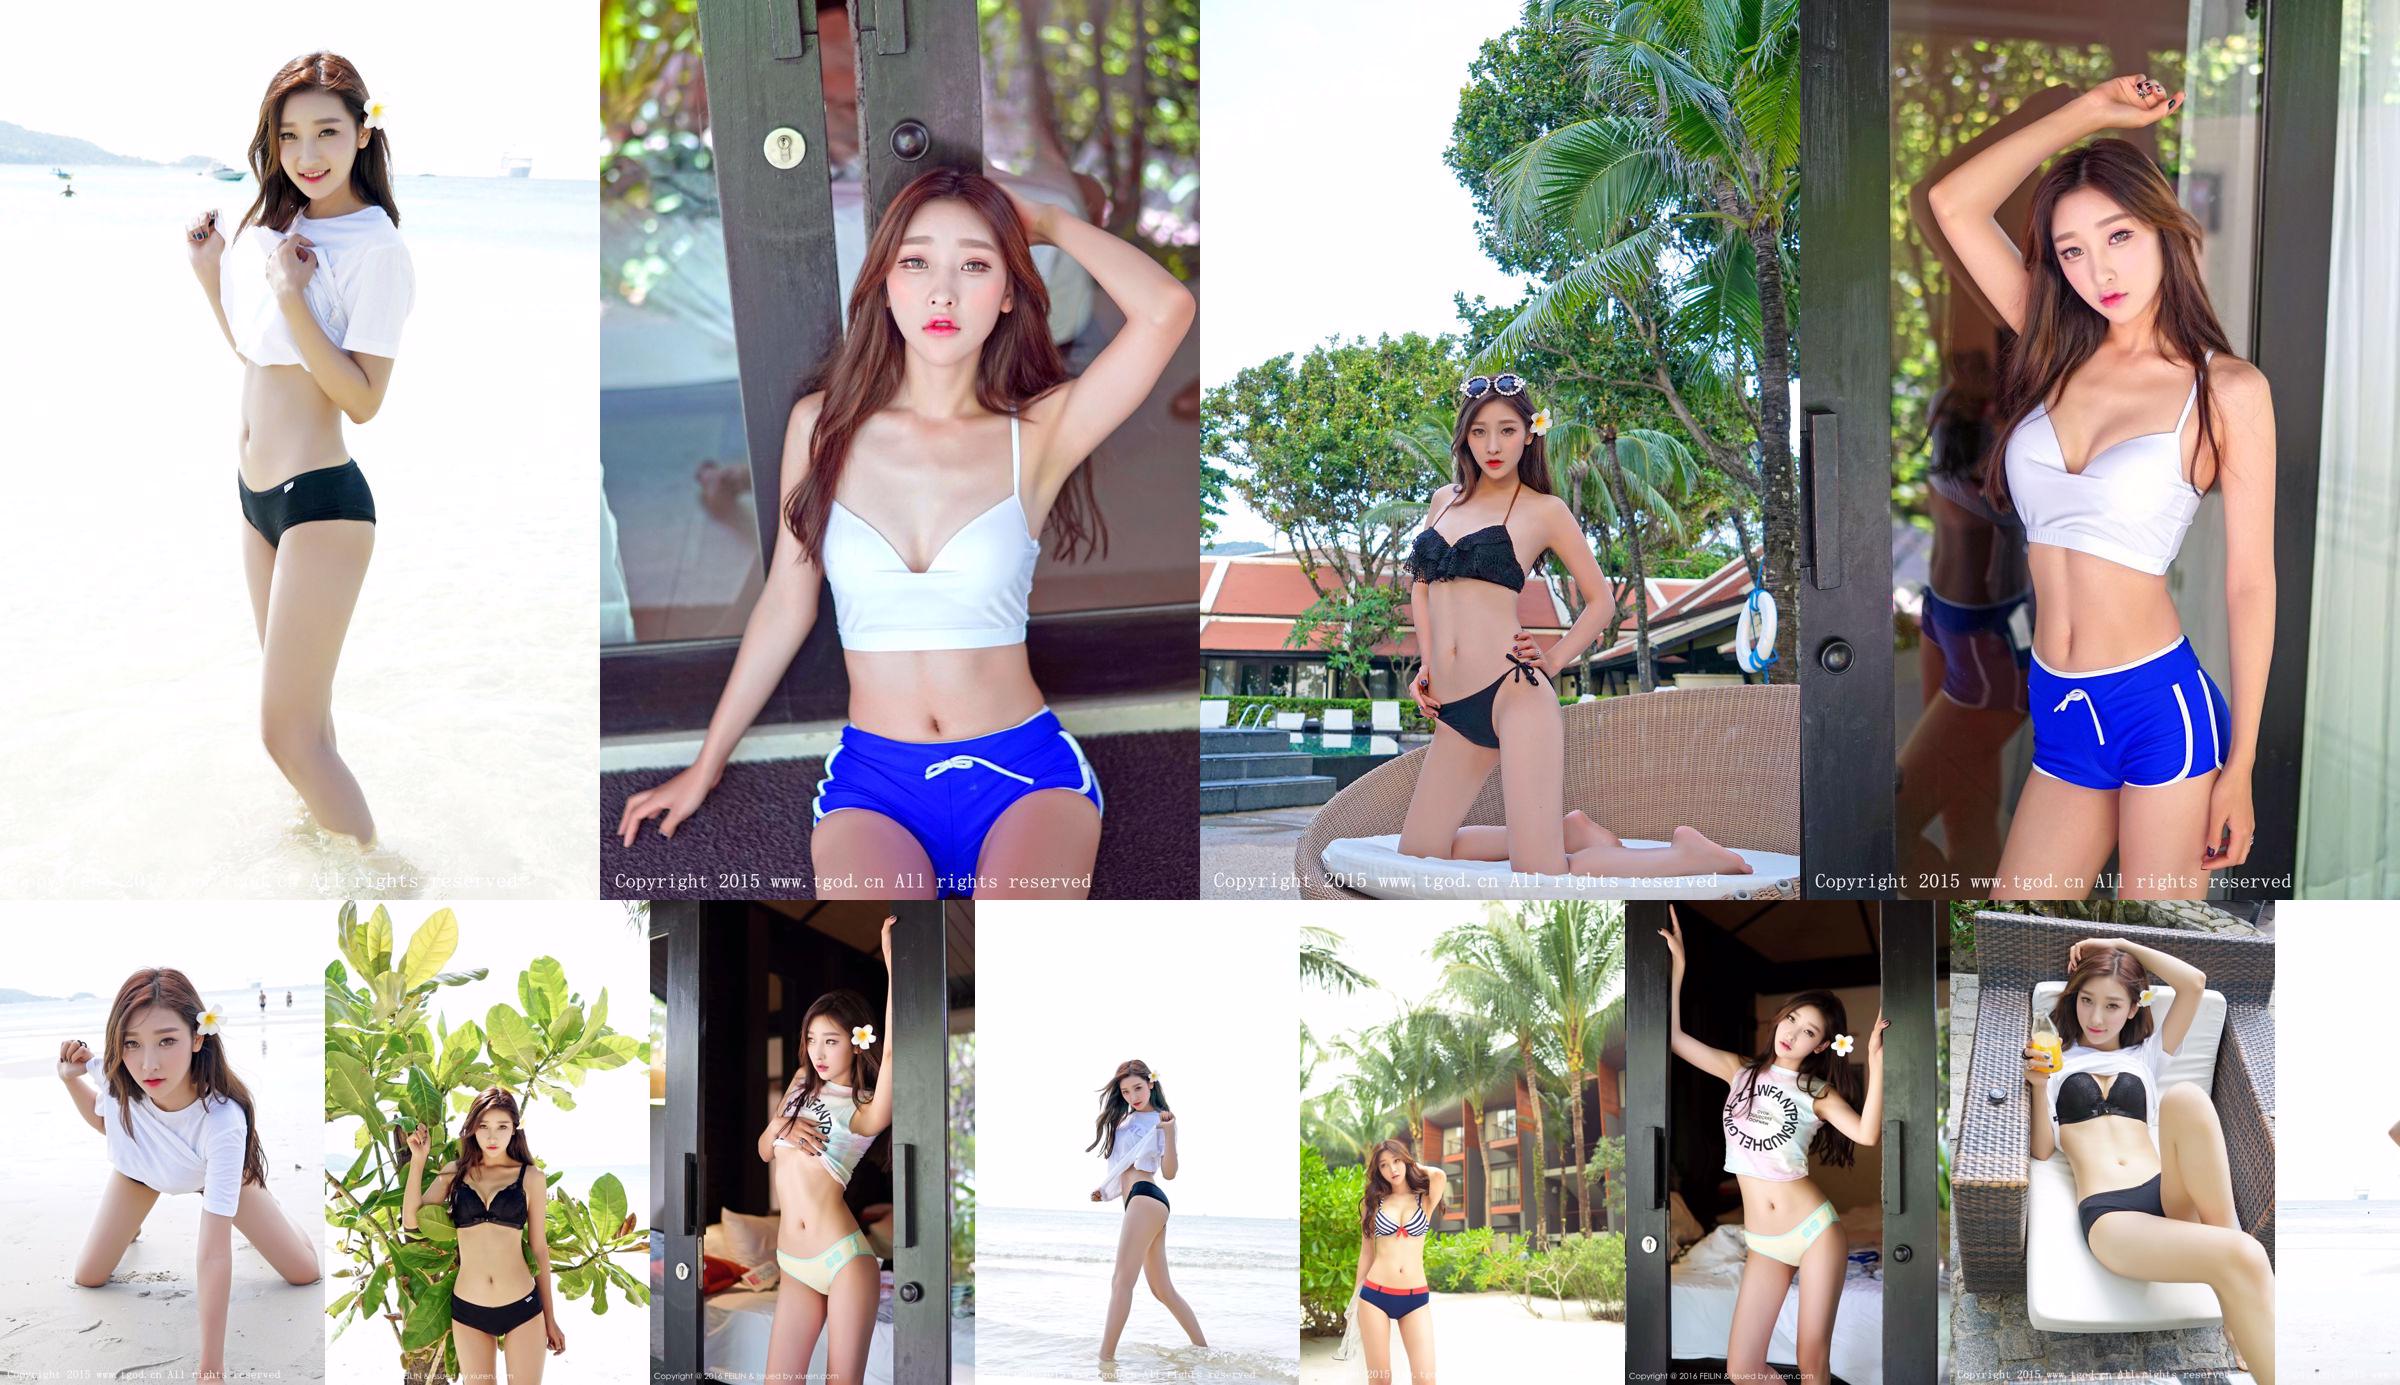 Li Xiaoqiao JoJo "Phuket Travel Shooting" Zweite Ausgabe [TGOD Push Goddess] No.17c751 Seite 4